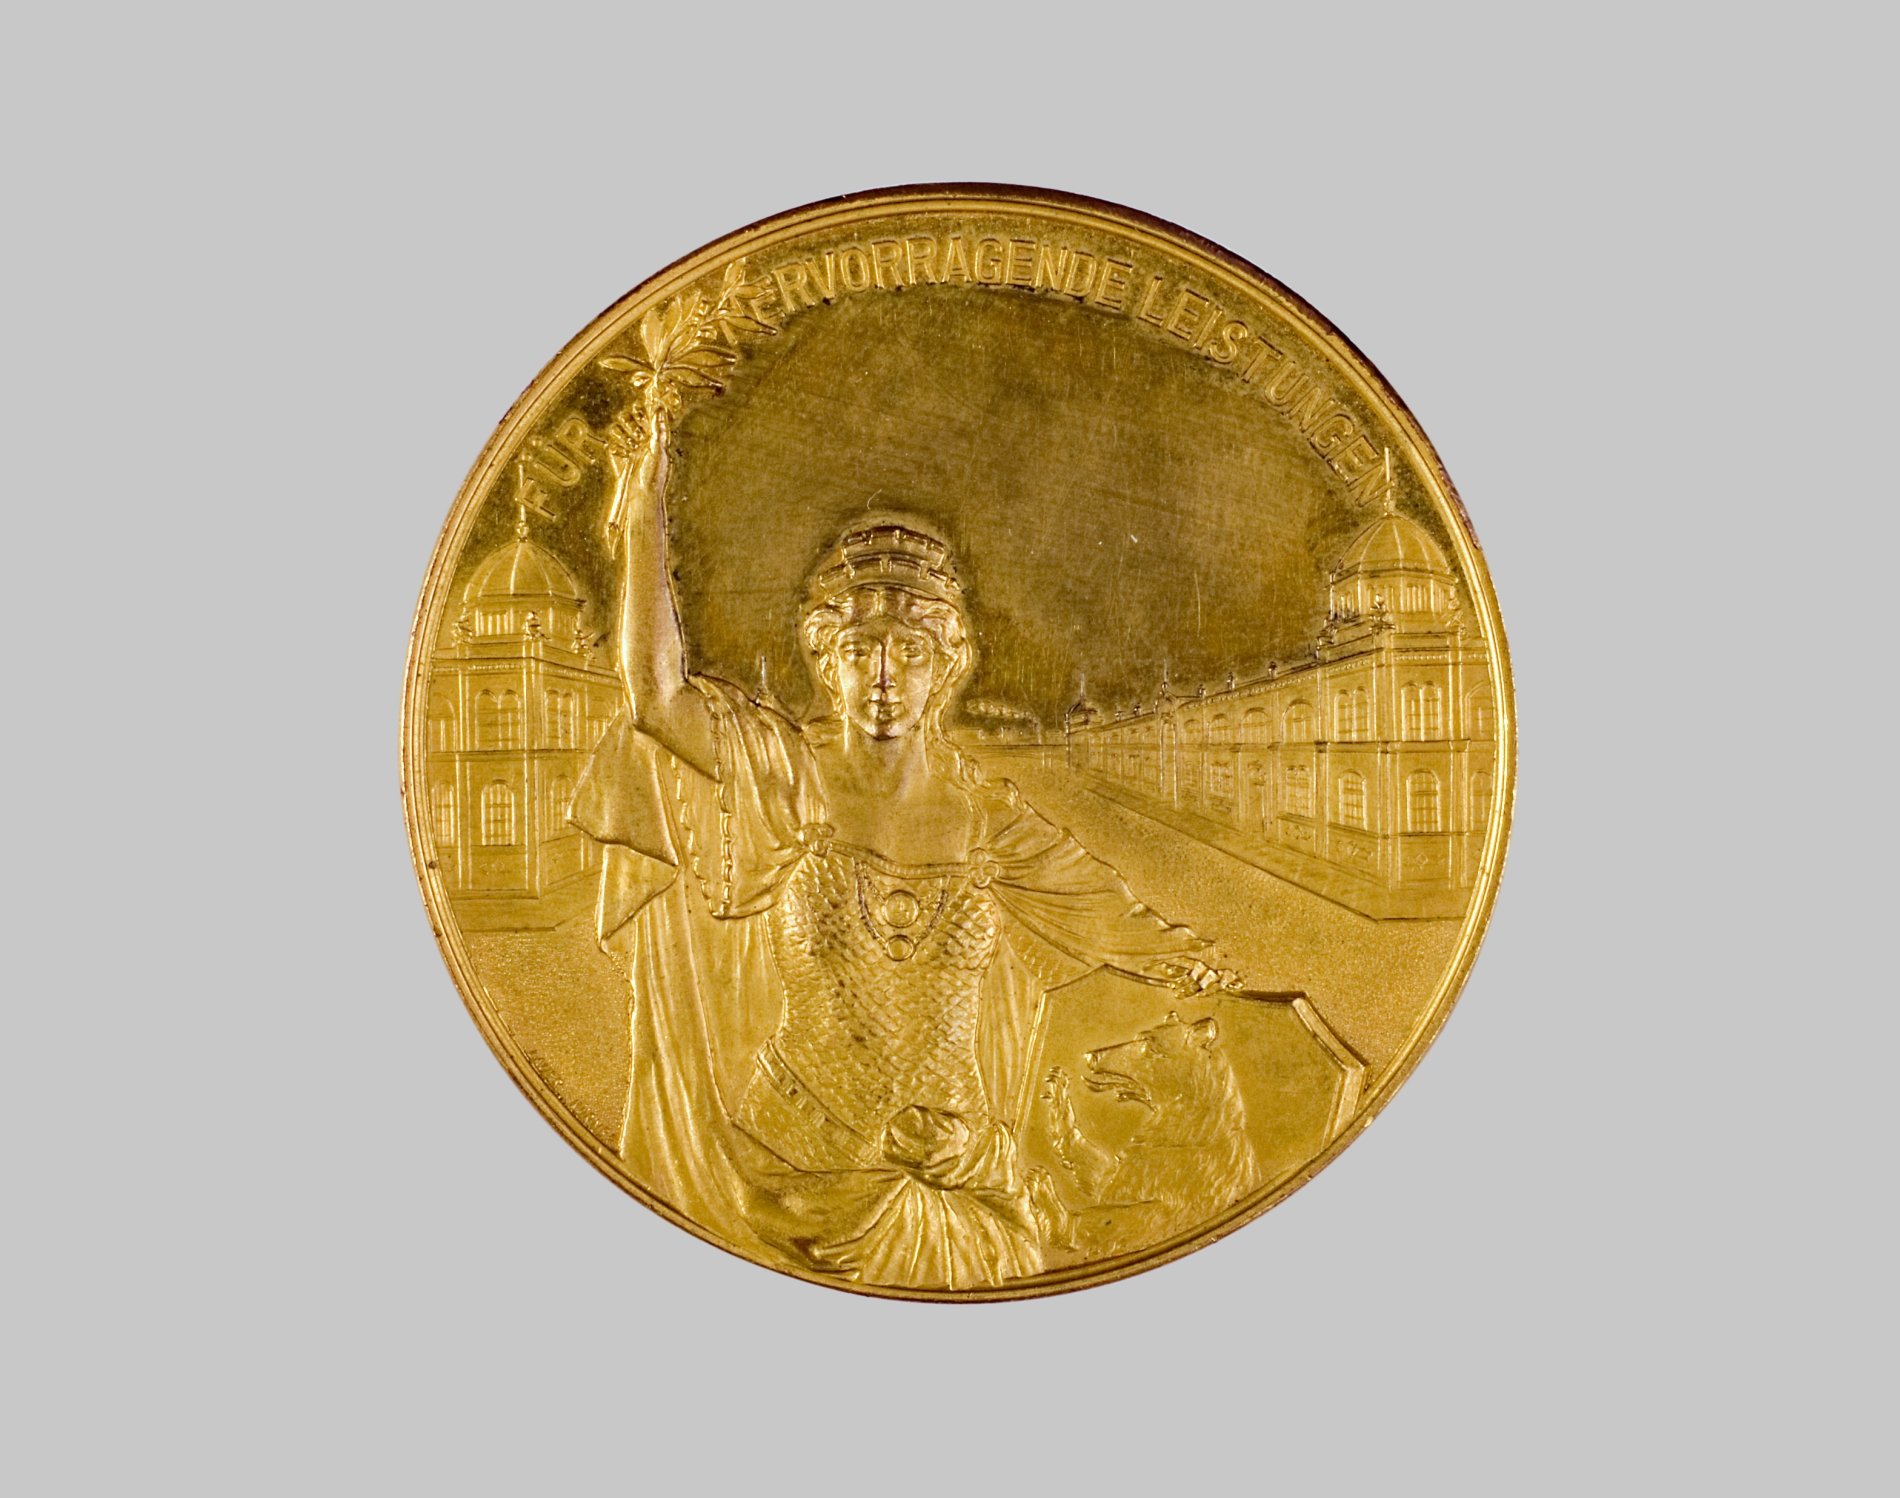 Medaille "Central- Markthalle Berlin" (Stiftung Domäne Dahlem - Landgut und Museum, Weiternutzung nur mit Genehmigung des Museums CC BY-NC-SA)